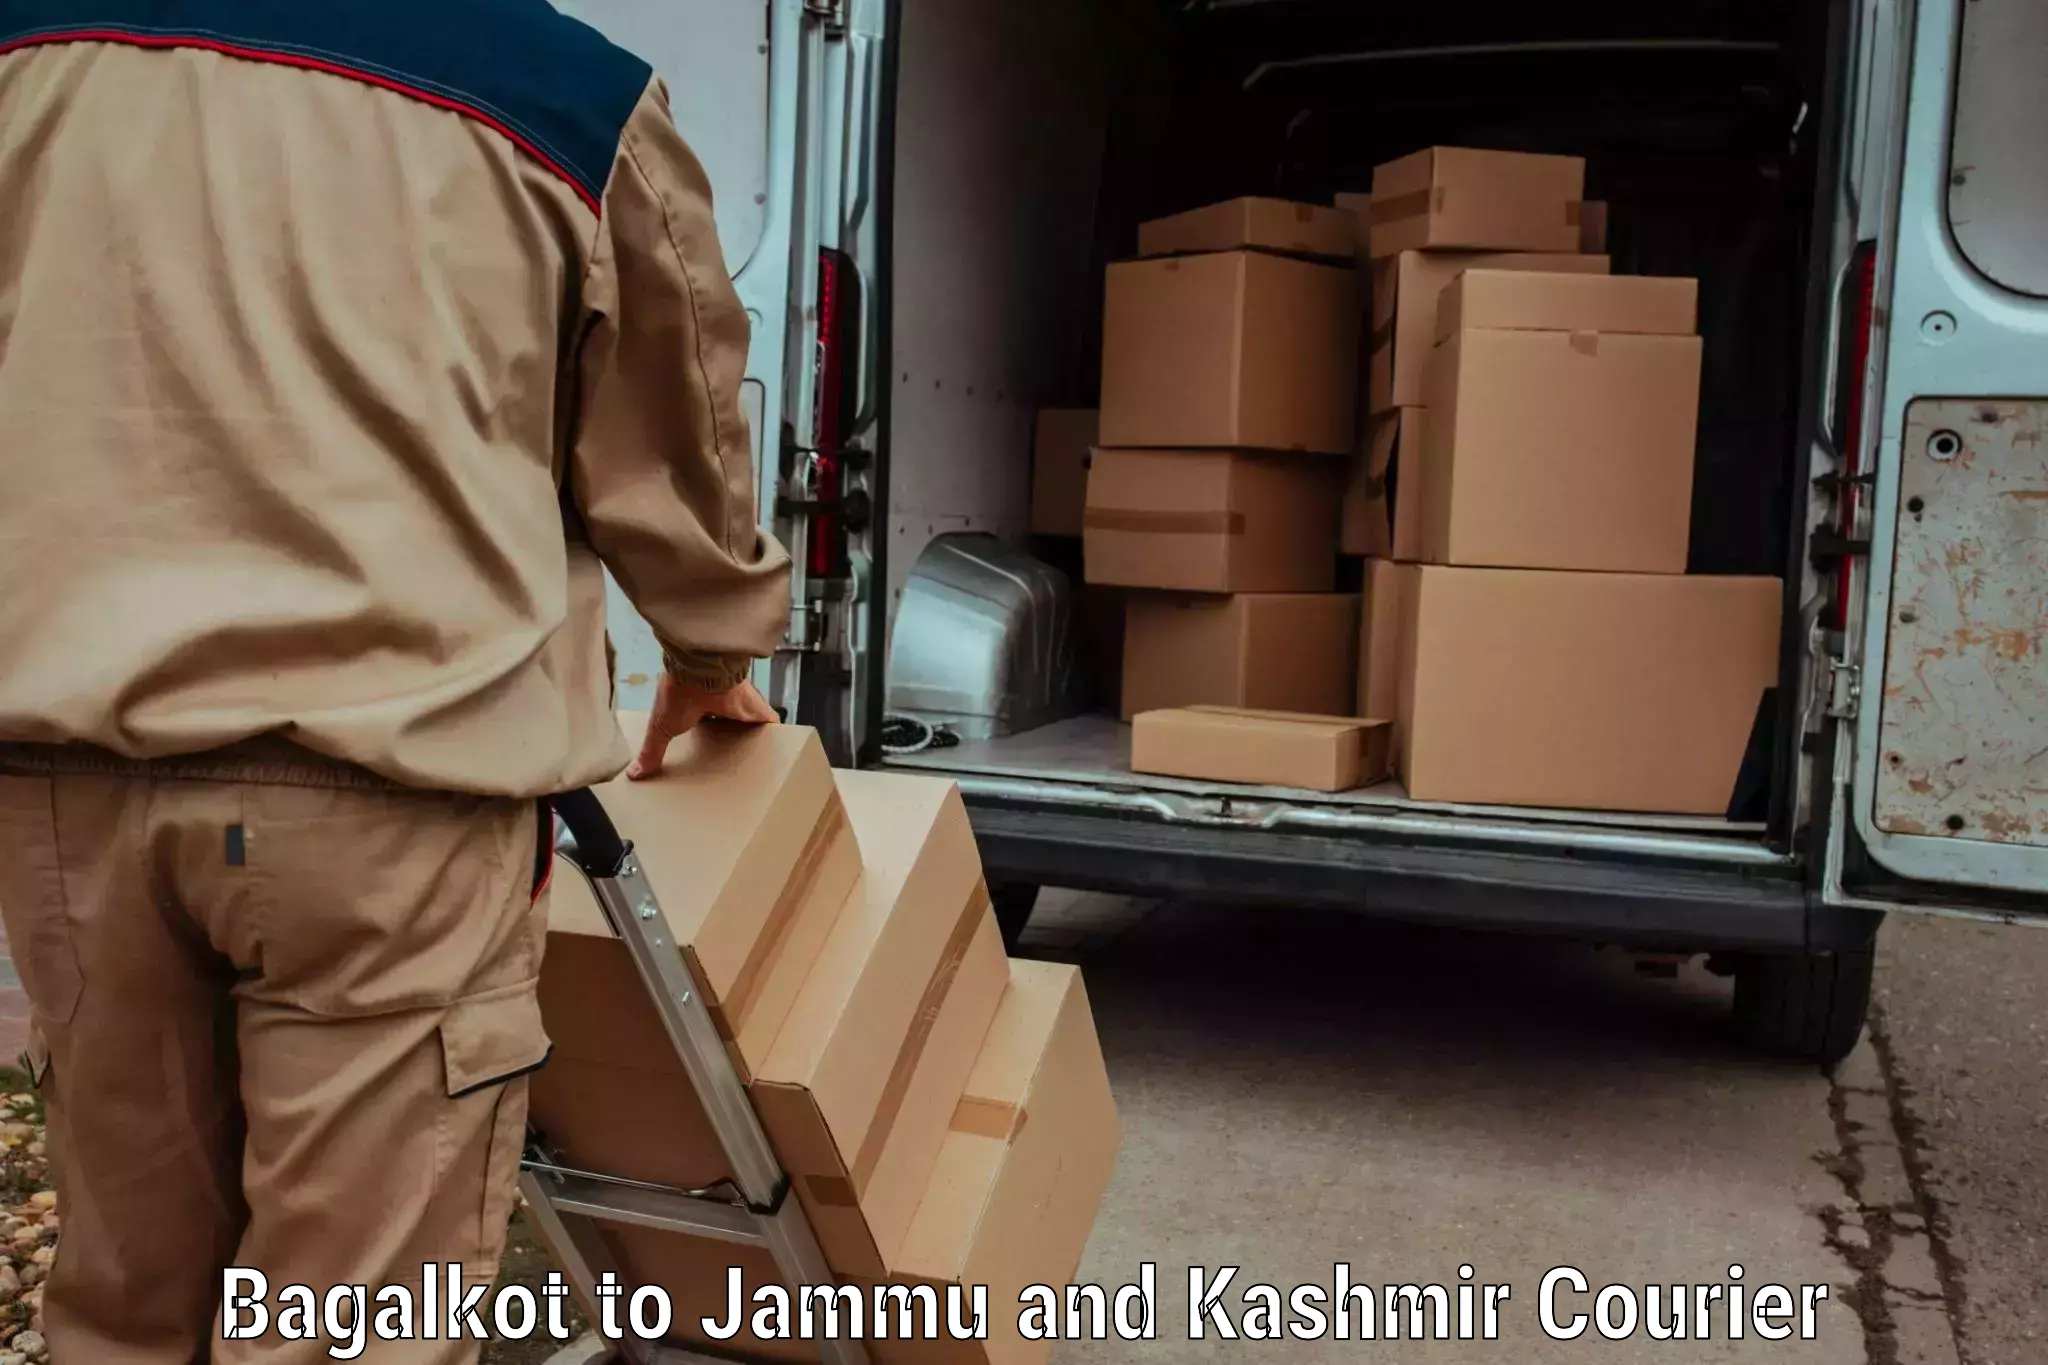 Doorstep delivery service Bagalkot to Kargil